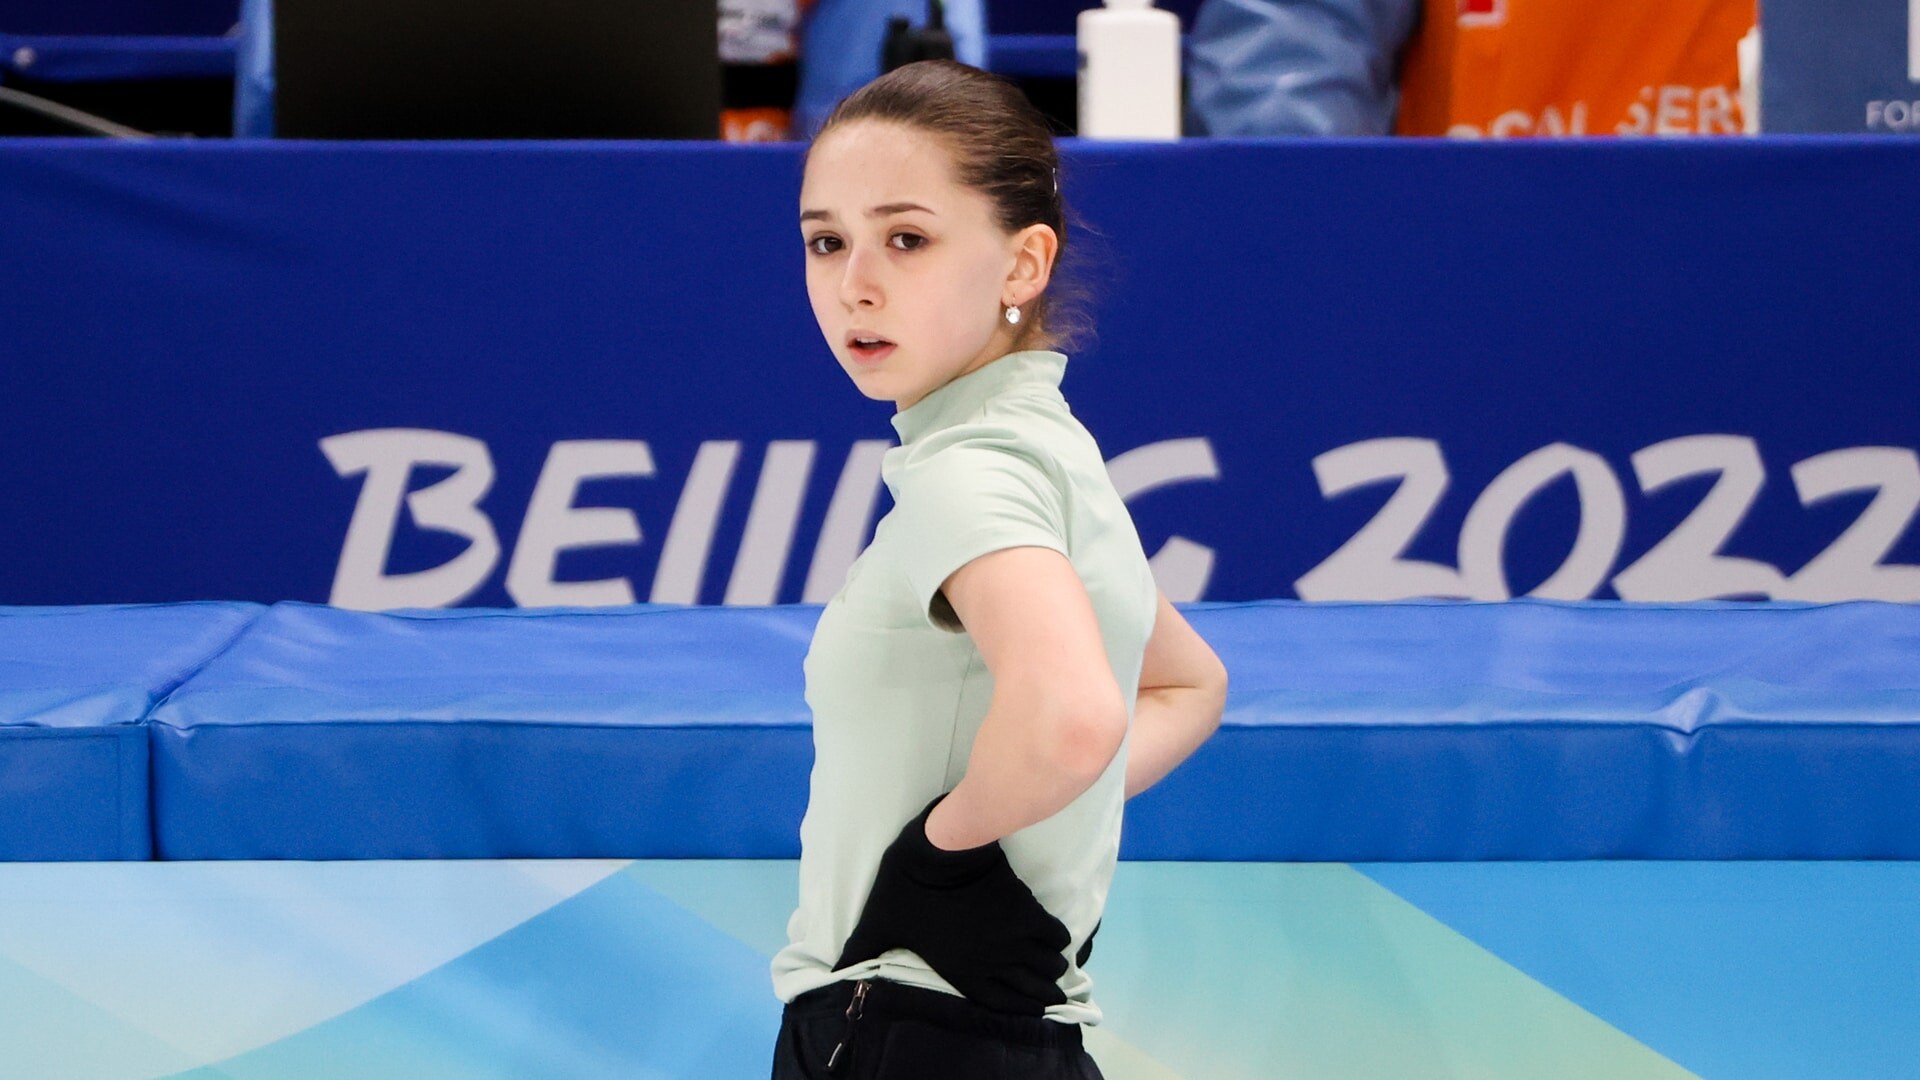 How to watch womens figure skating, Kamila Valieva at the Olympics